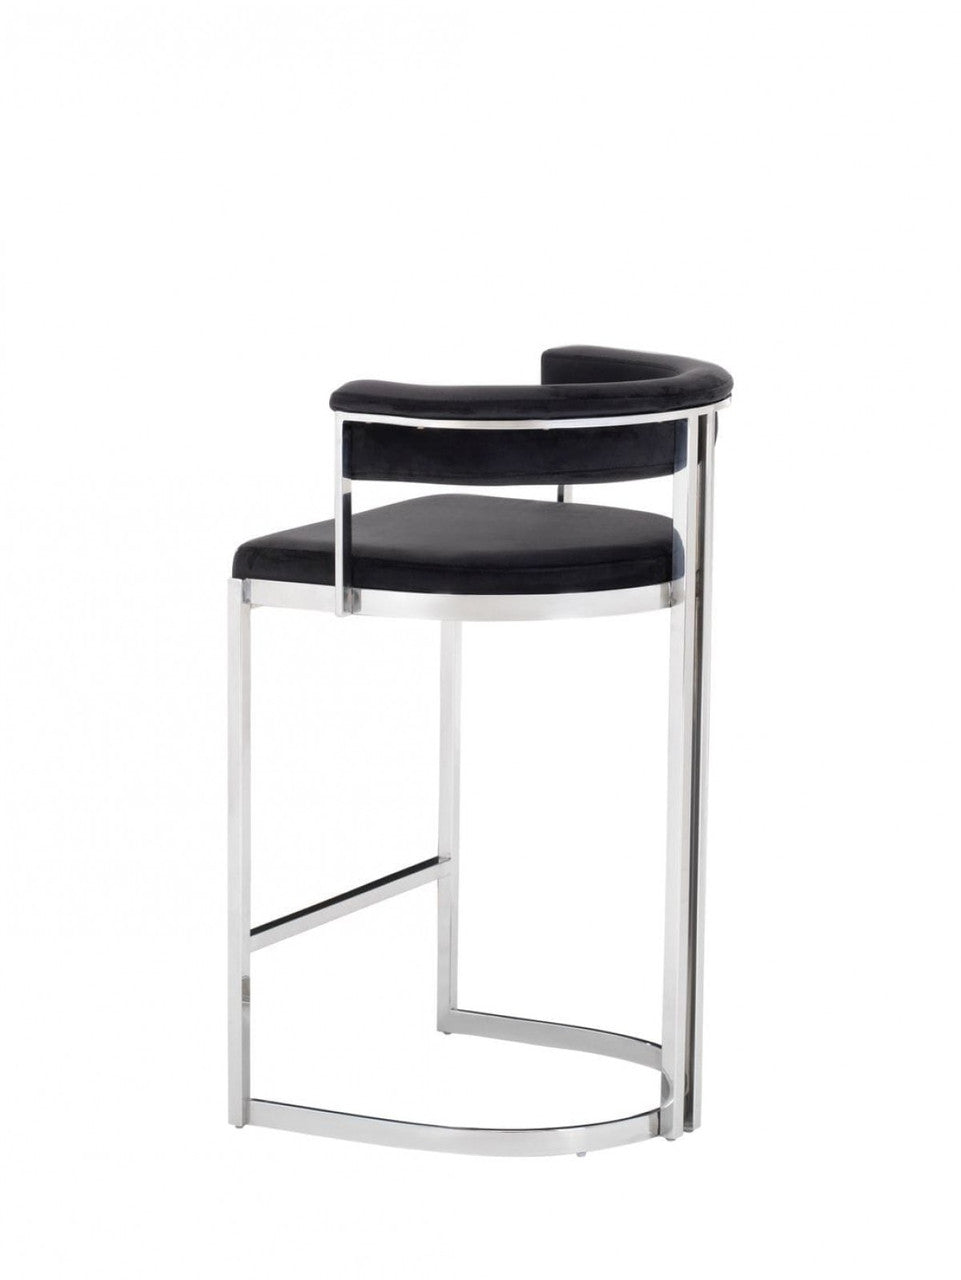 Modrest Munith Modern Black Velvet & Stainless Steel Bar Chair